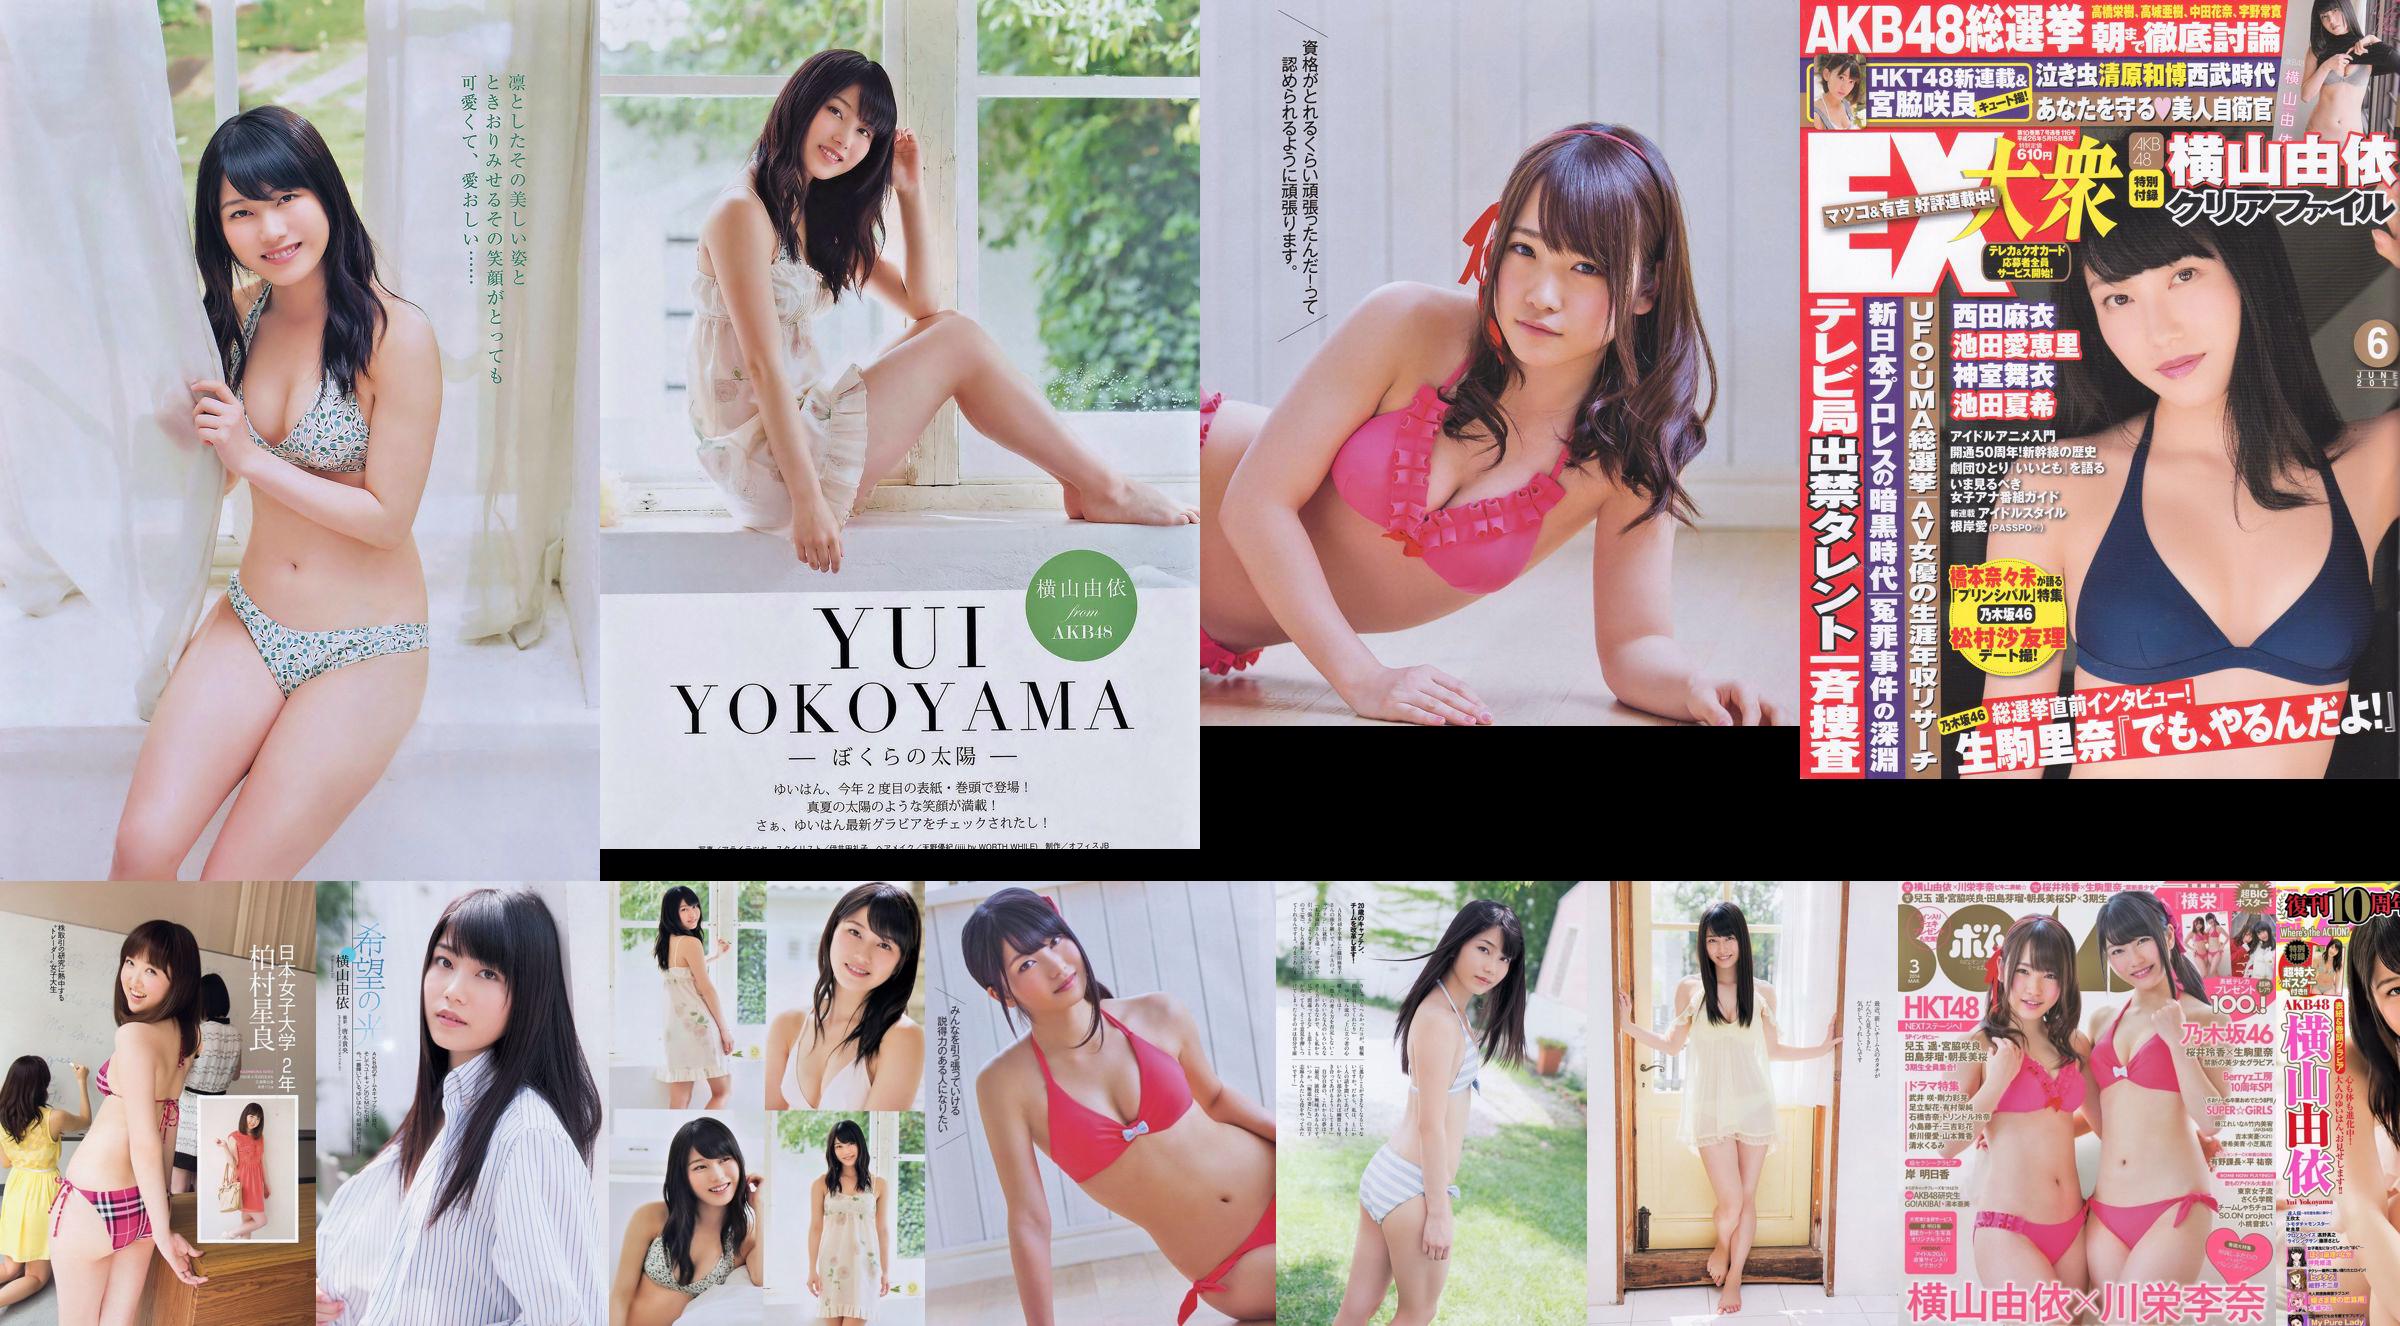 Yui Yokoyama Nozomi Sasaki Rina Koike Asuka Kuramochi Miwako Kakei Risa Yoshiki Ruri Shinato [wekelijkse Playboy] 2013 nr 38 foto No.f4e416 Pagina 19